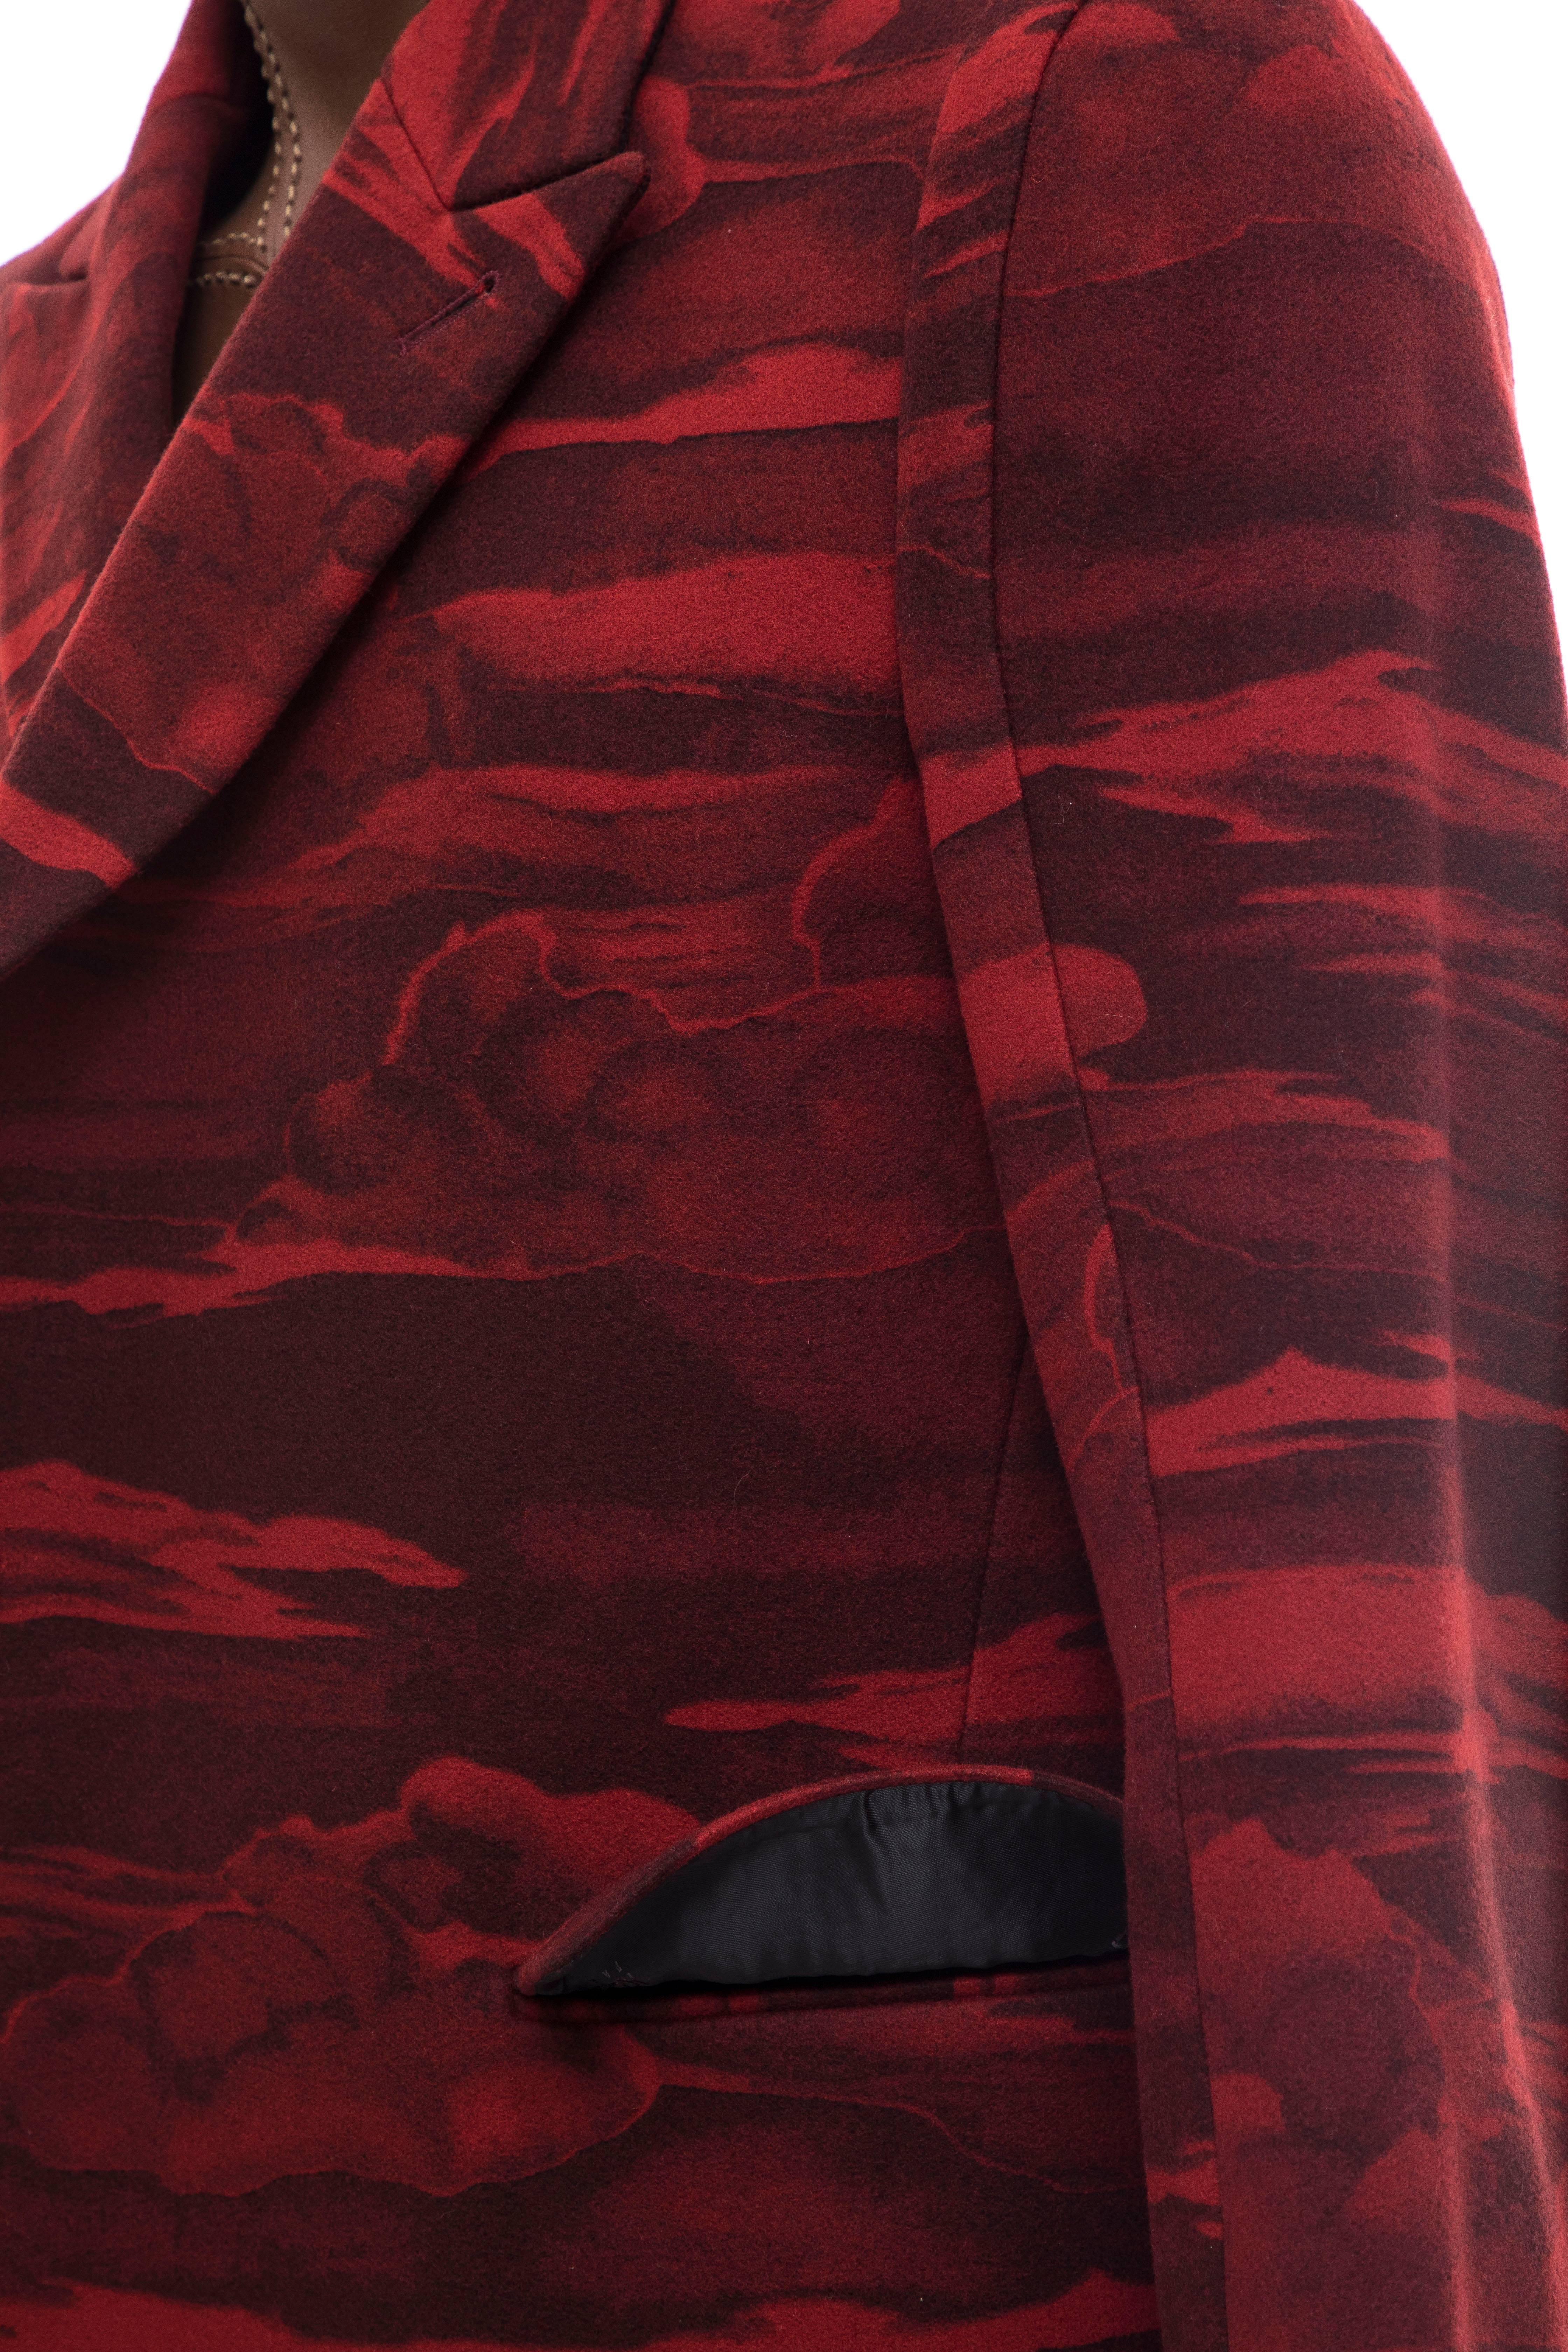 Kenzo Men's Runway Wool Red Cloud Print Coat, Fall 2013 8